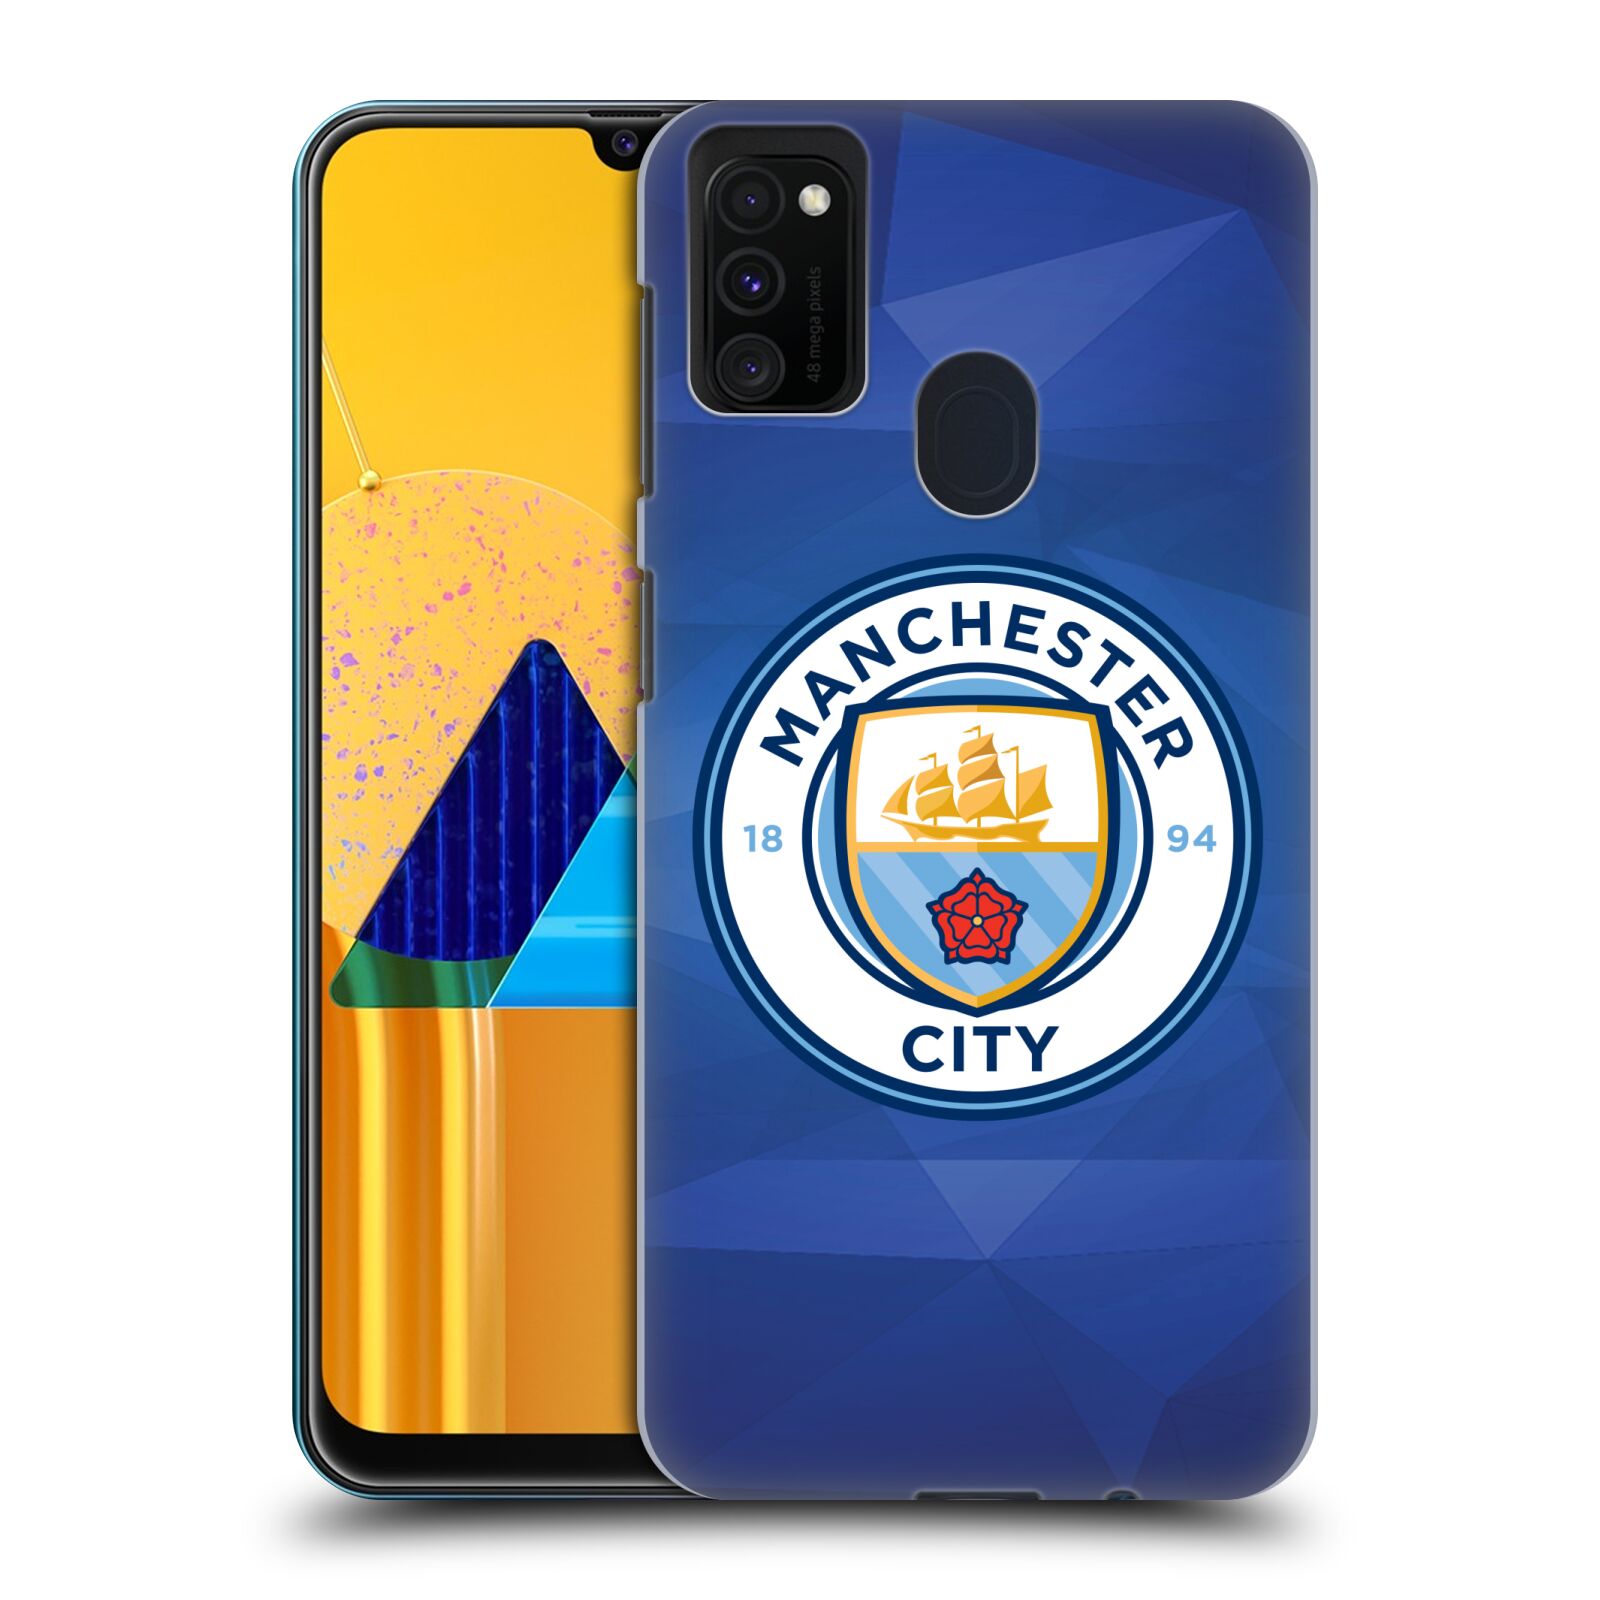 Plastové pouzdro na mobil Samsung Galaxy M21 - Head Case - Manchester City FC - Modré nové logo (Plastový kryt, pouzdro, obal na mobilní telefon Samsung Galaxy M21 M215F Dual Sim s motivem Manchester City FC - Modré nové logo)